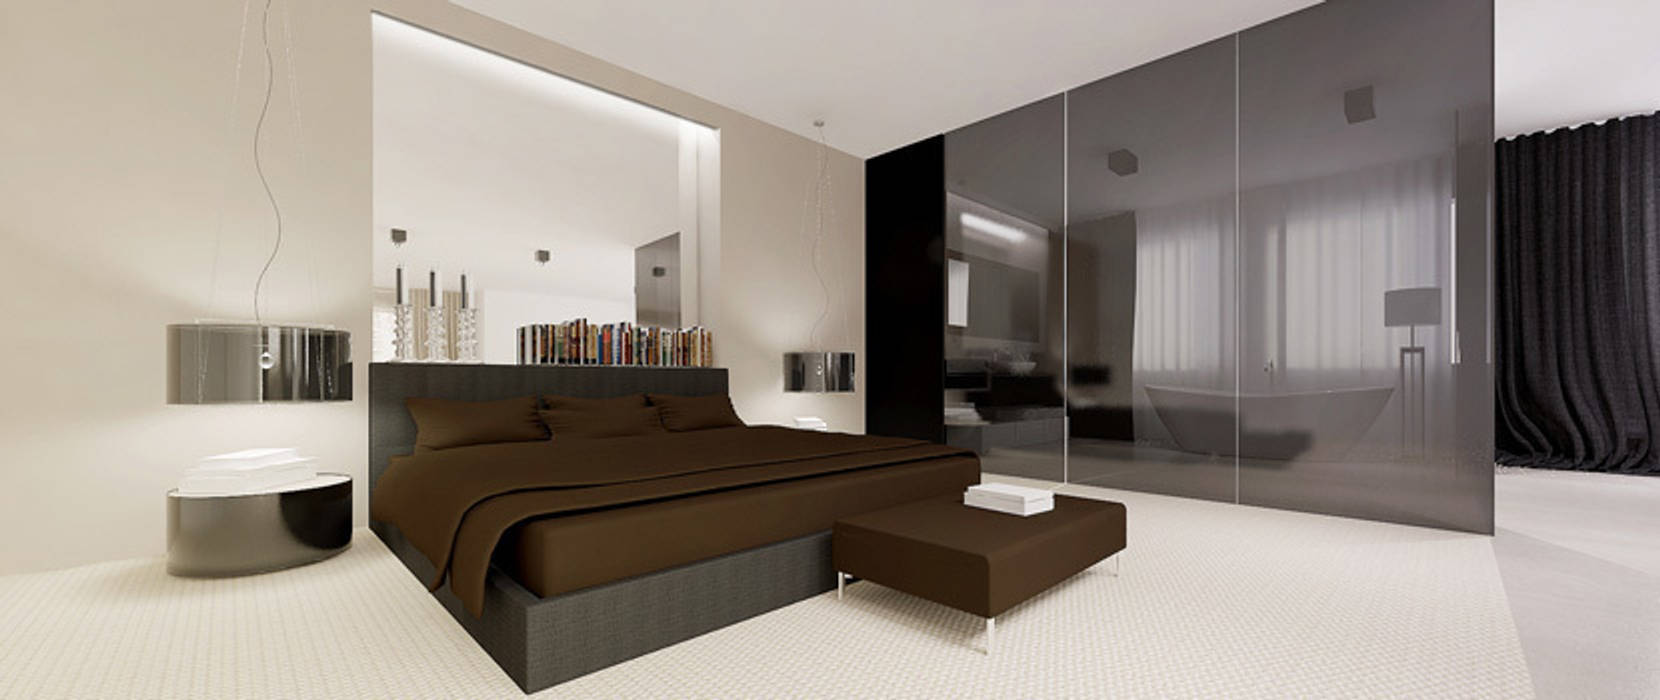 Widok na łóżko Ajot pracownia projektowa Minimalistyczna sypialnia